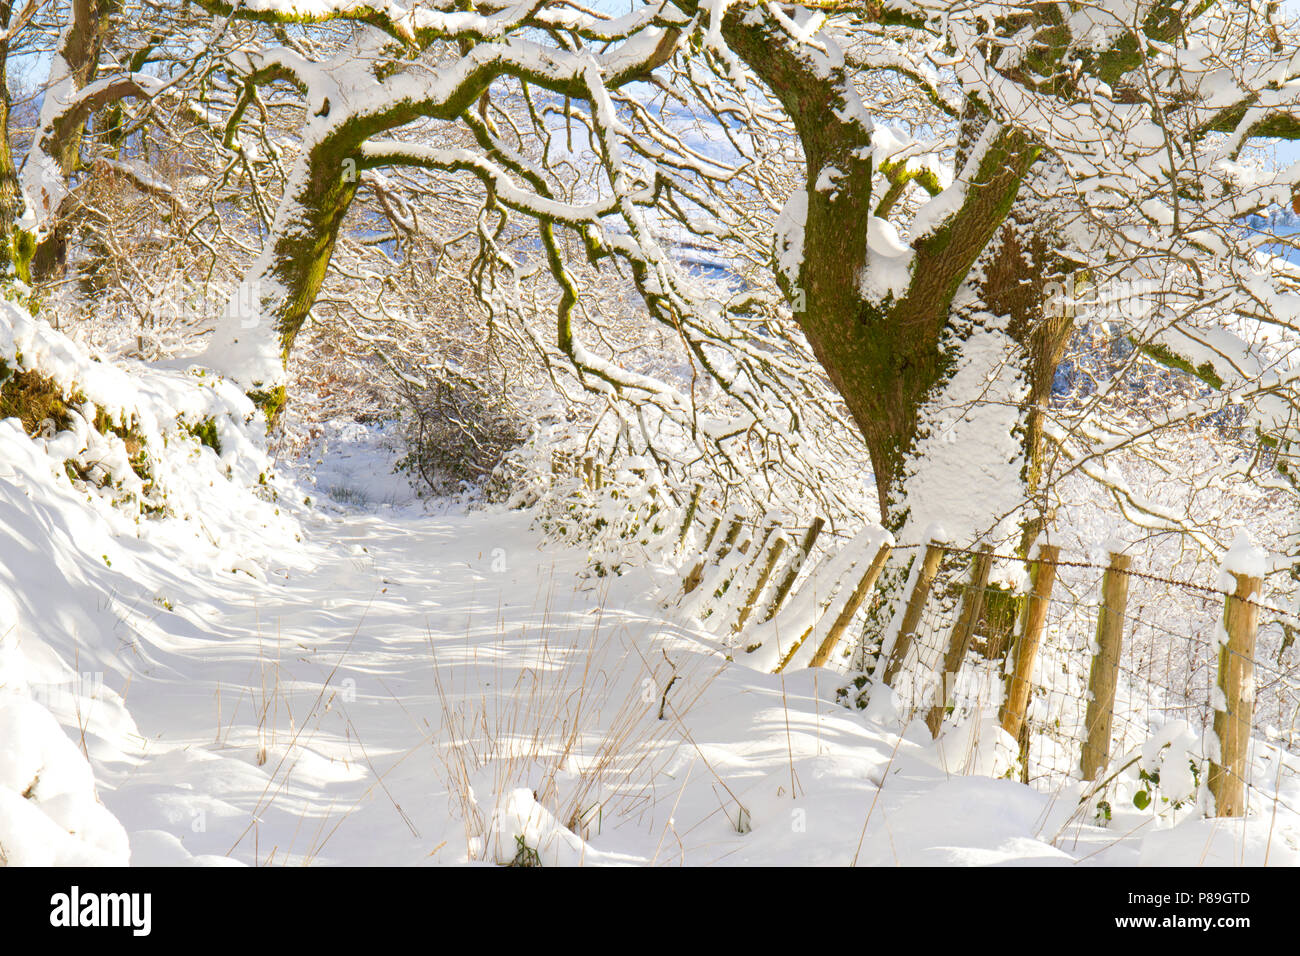 Anschluss über eine Trauben-eiche (Quercus pontica) Woodland nach einem schweren Sturz von Schnee. Powys, Wales. Dezember. Stockfoto